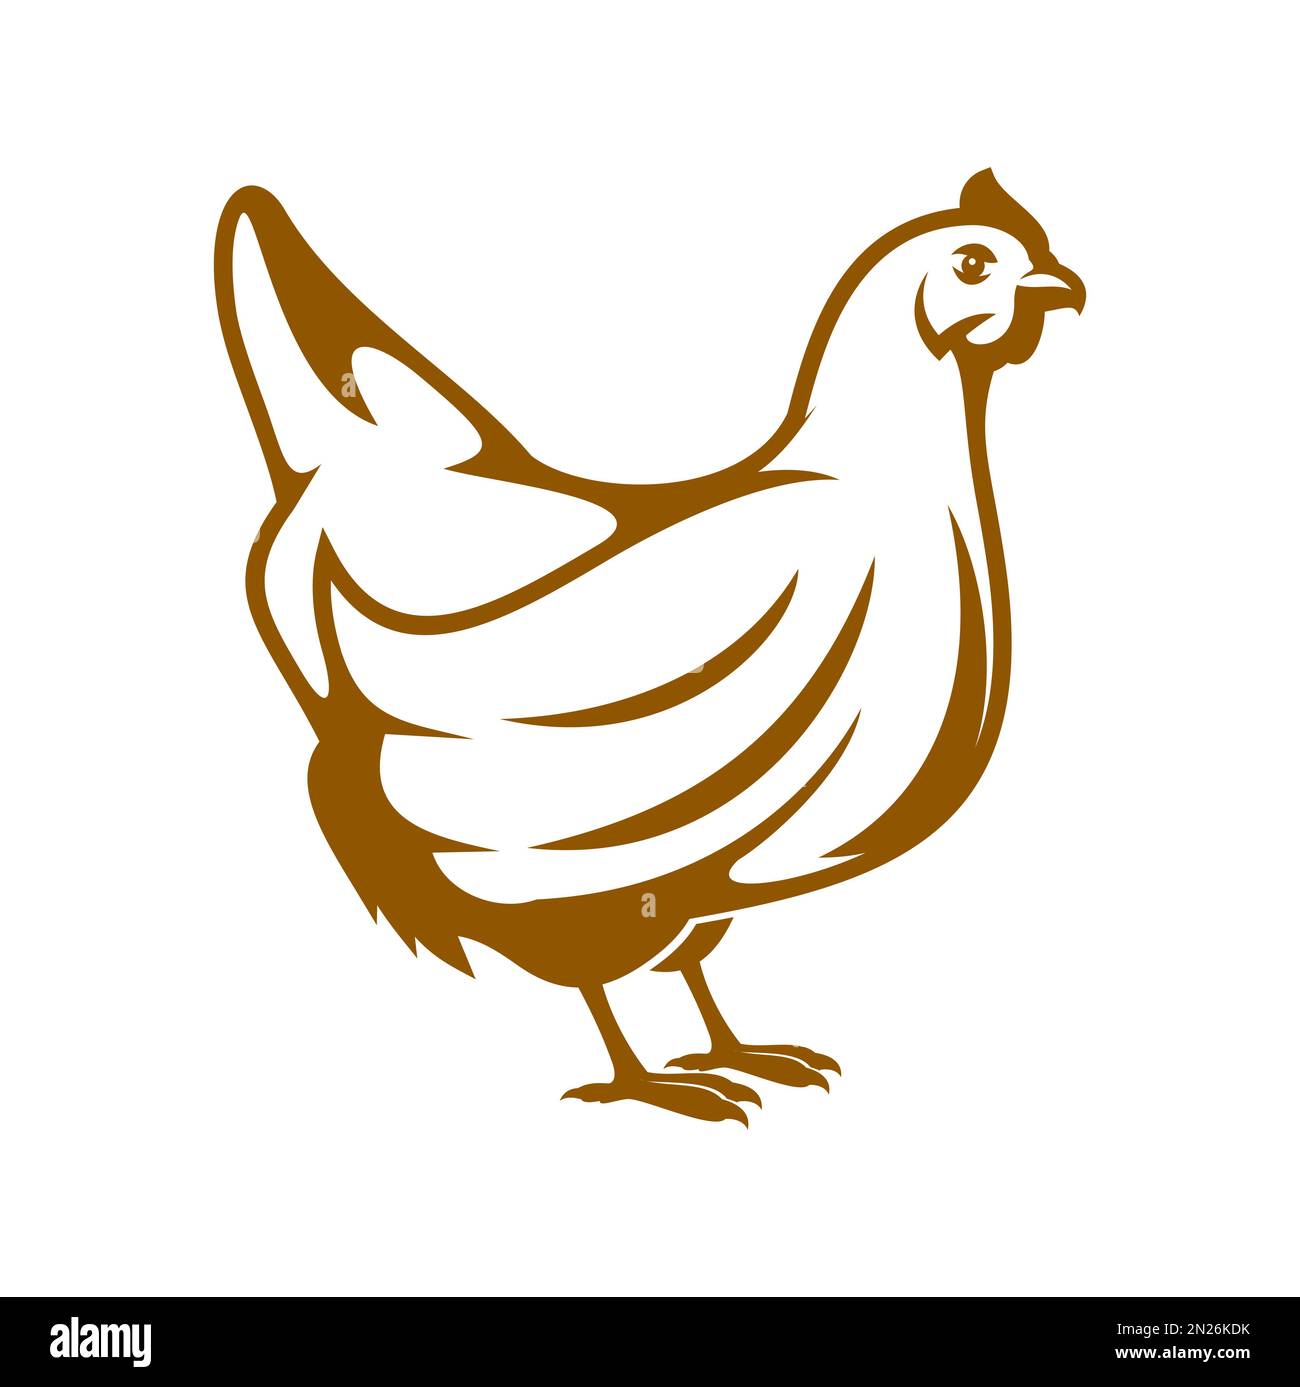 Chicken farm logo template collection